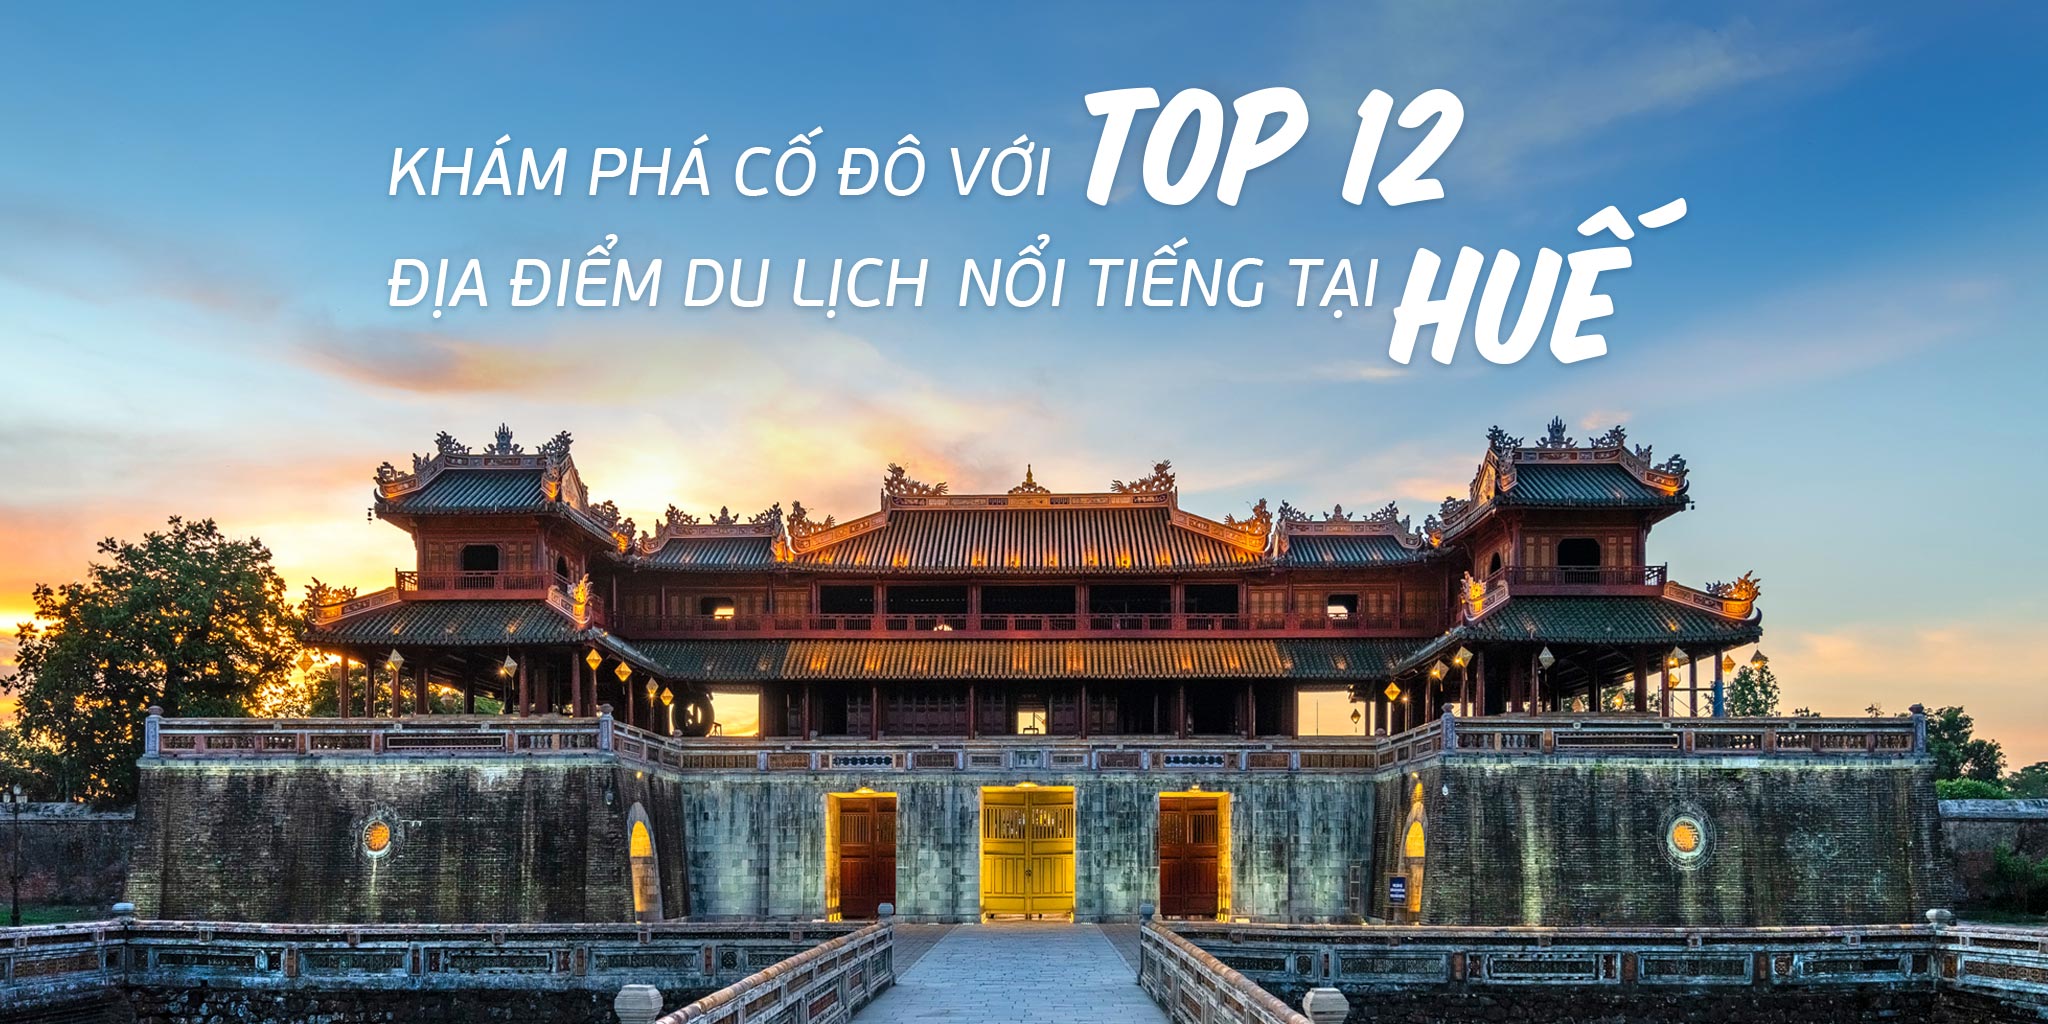 Khám phá Cố Đô với Top 12 địa điểm du lịch nổi tiếng tại Huế